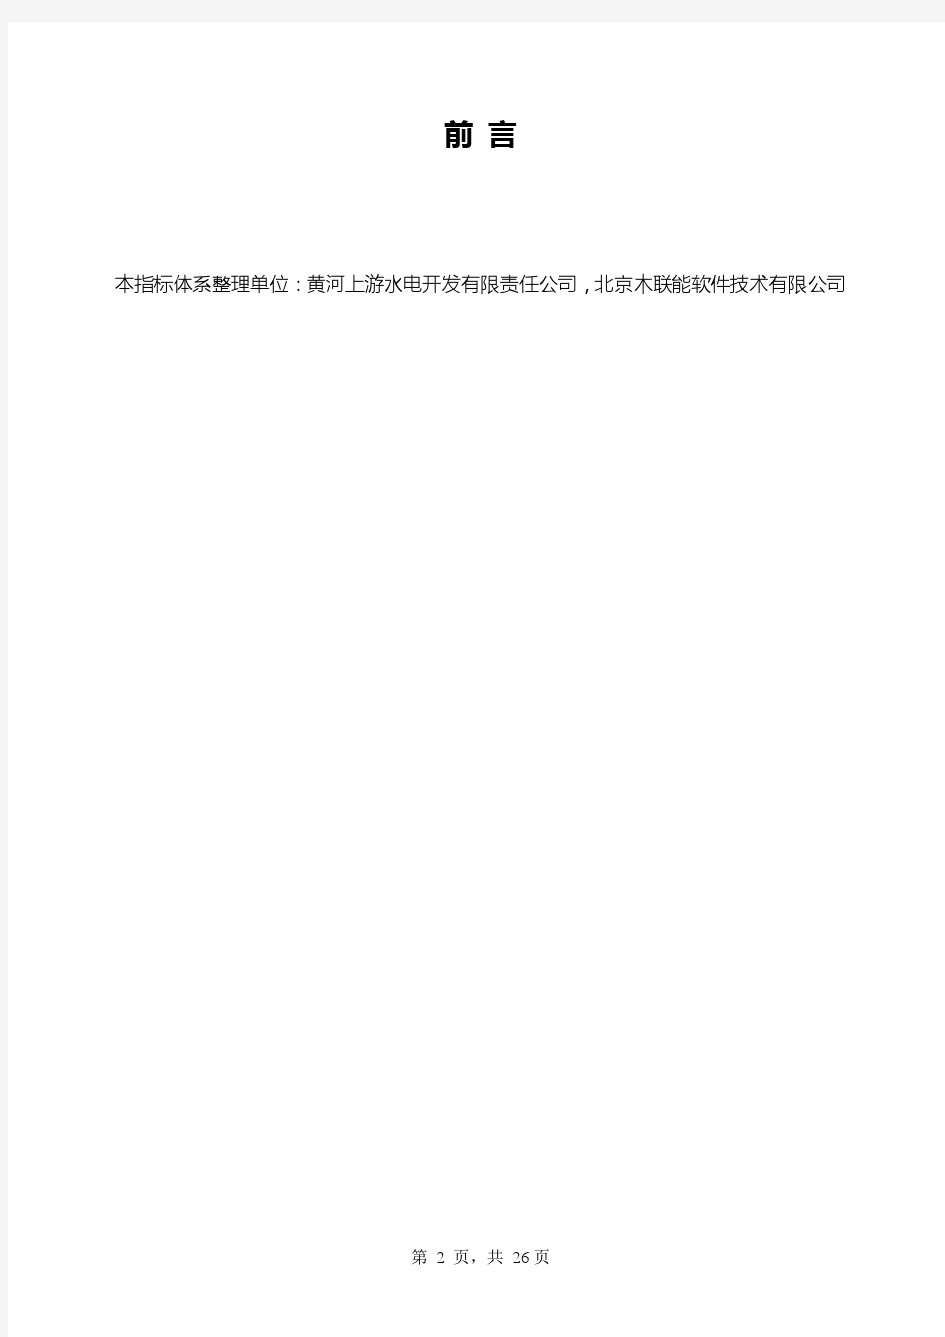 光伏电站生产运行指标体系(2014年9月修订版)